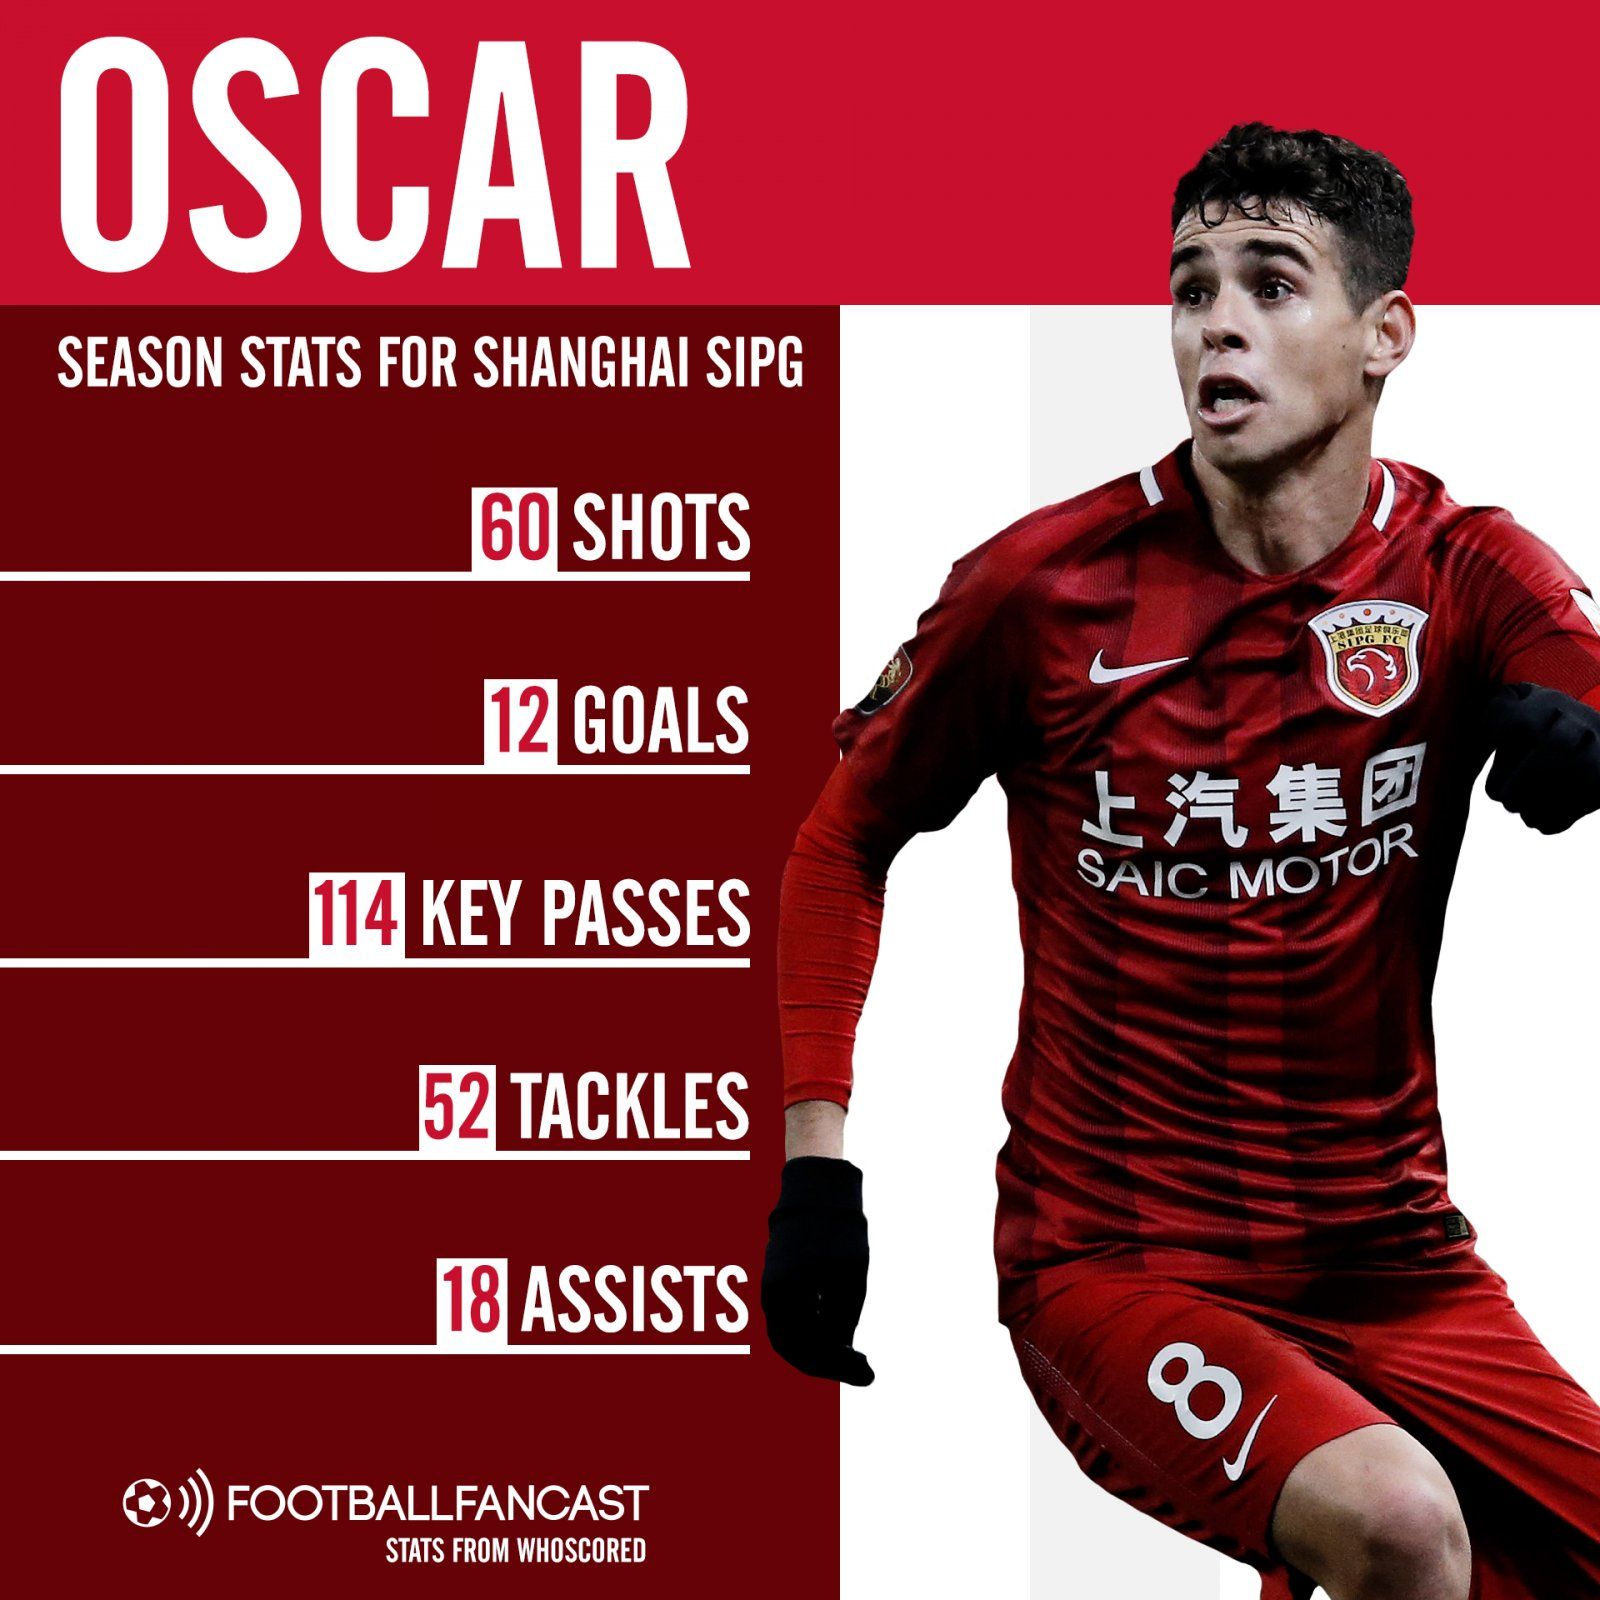 Oscar stats for Shanghai SIPG 2018